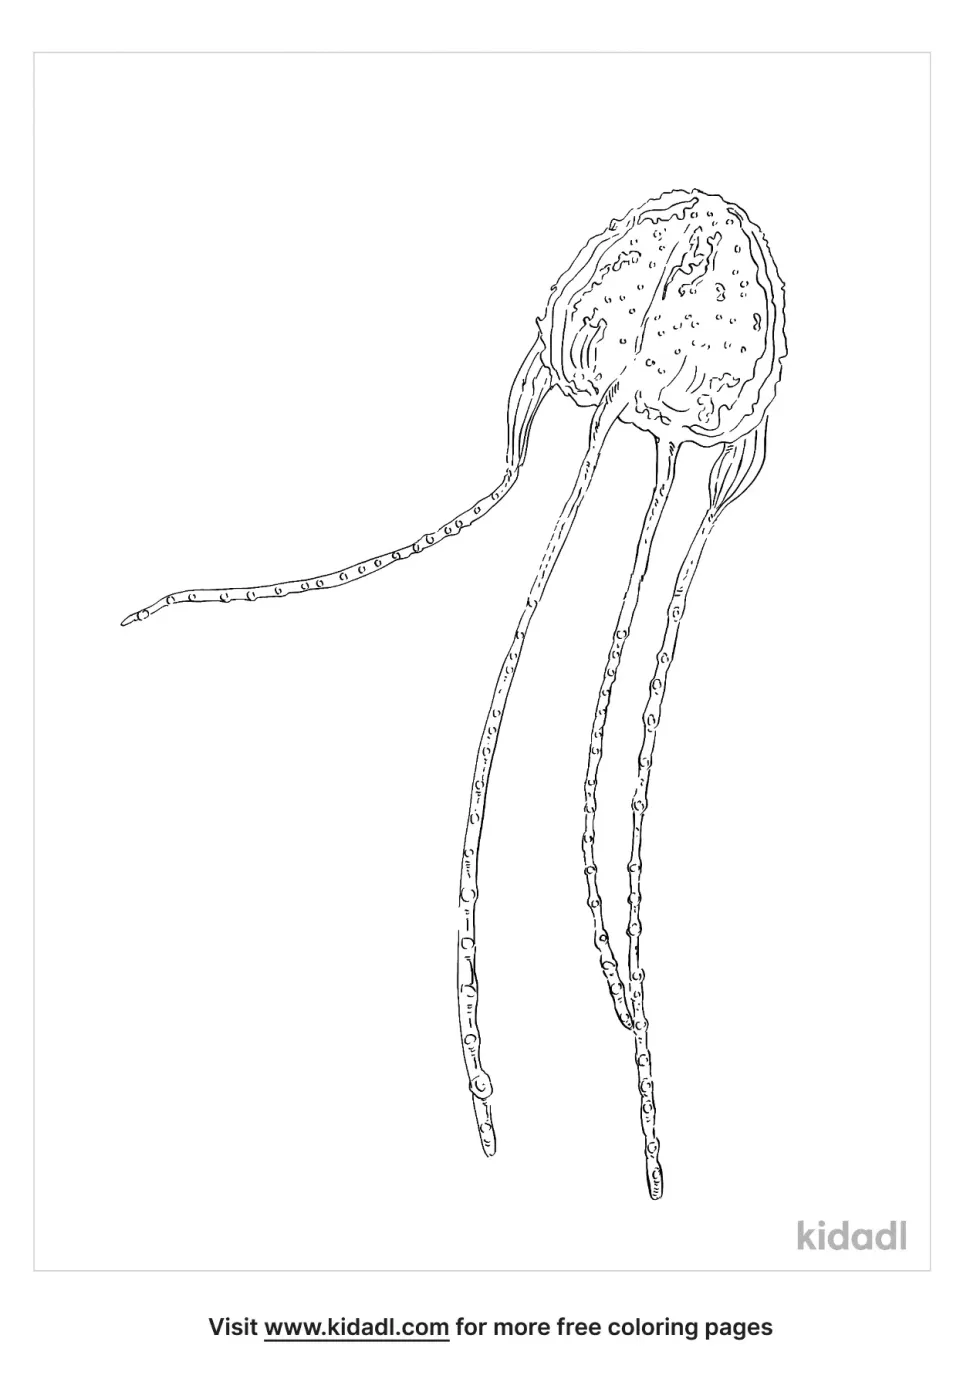 Irukandji Jellyfish | Kidadl